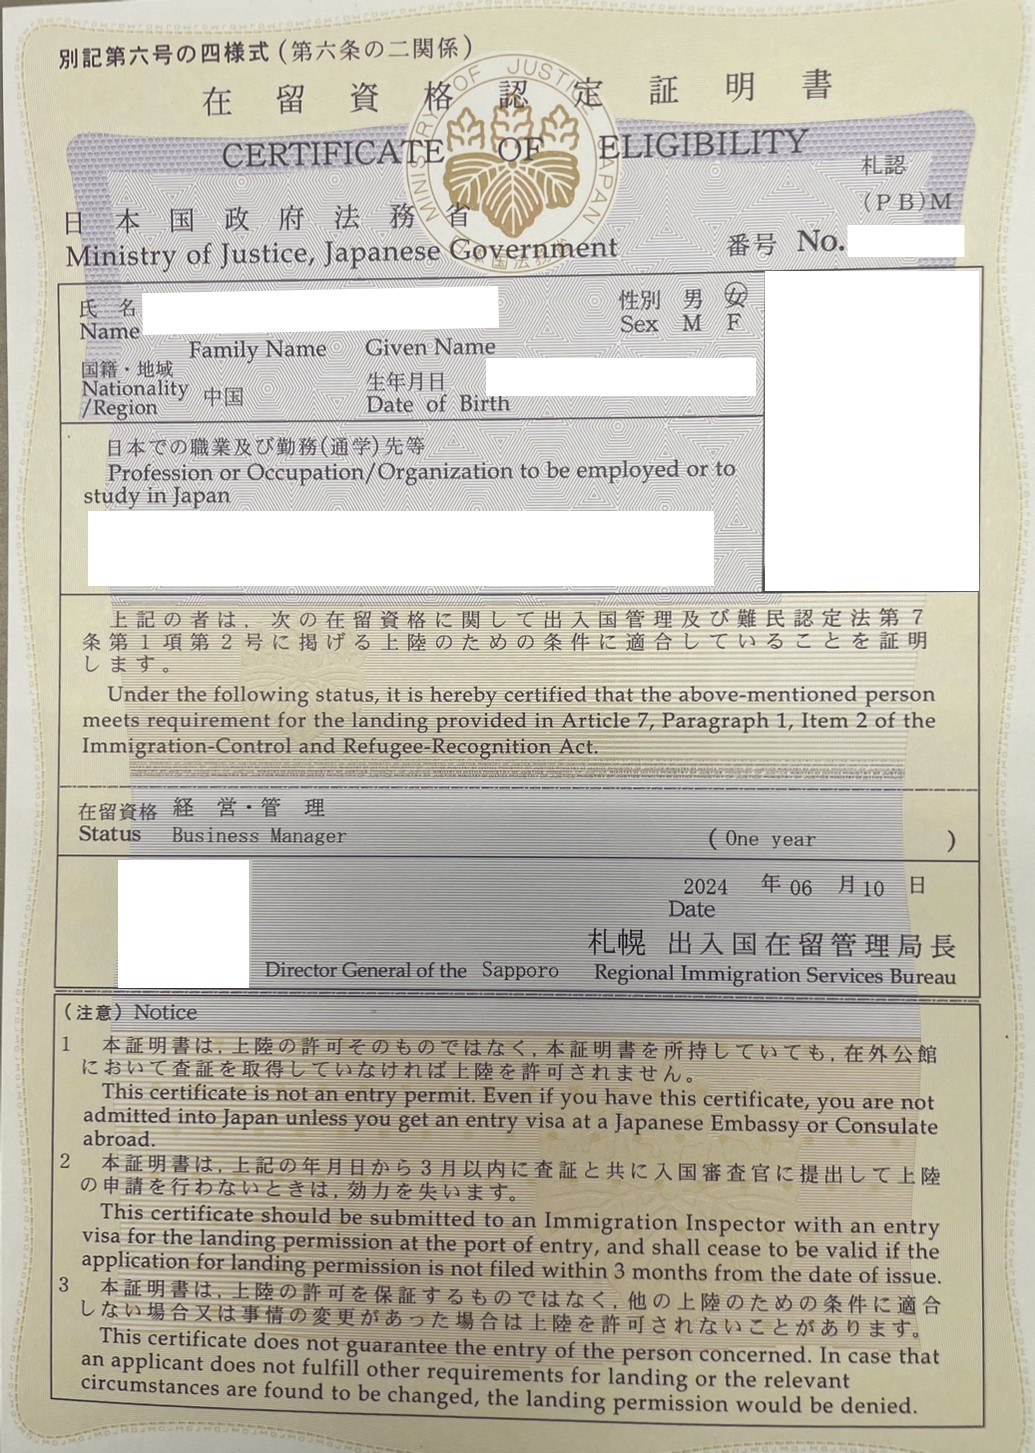 【在留資格認定】 【Certification of residence status】　【在留资格认定证明】